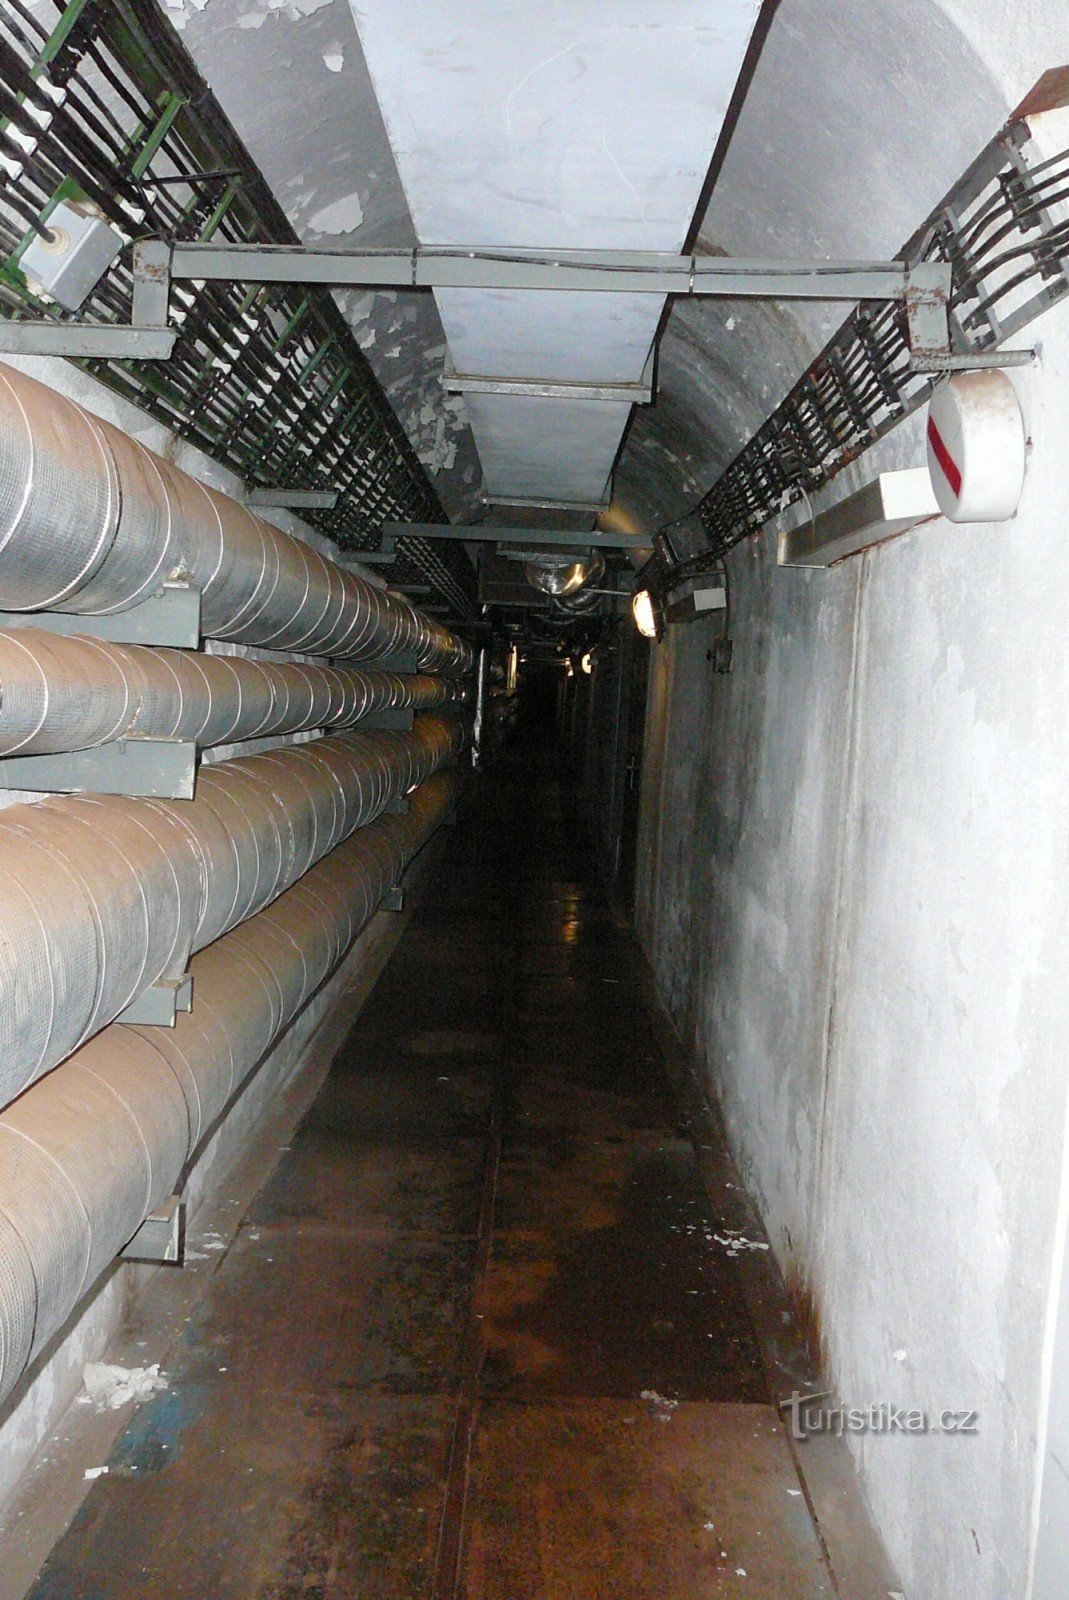 600 metara dug podzemni prolaz